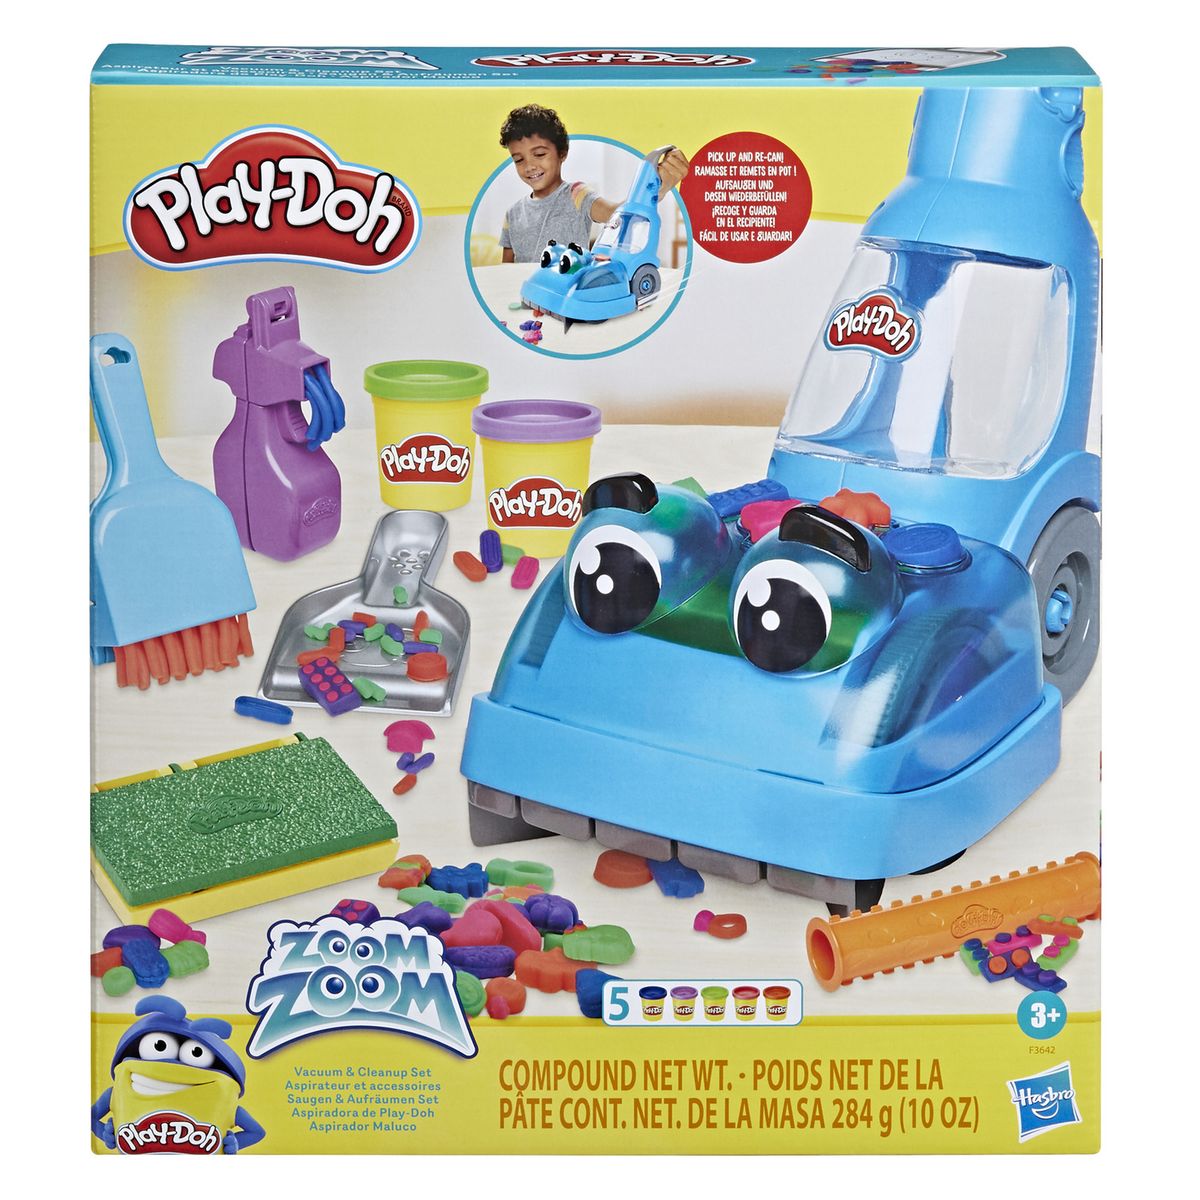 Play-doh aspirateur et accessoires v002226 Hasbro